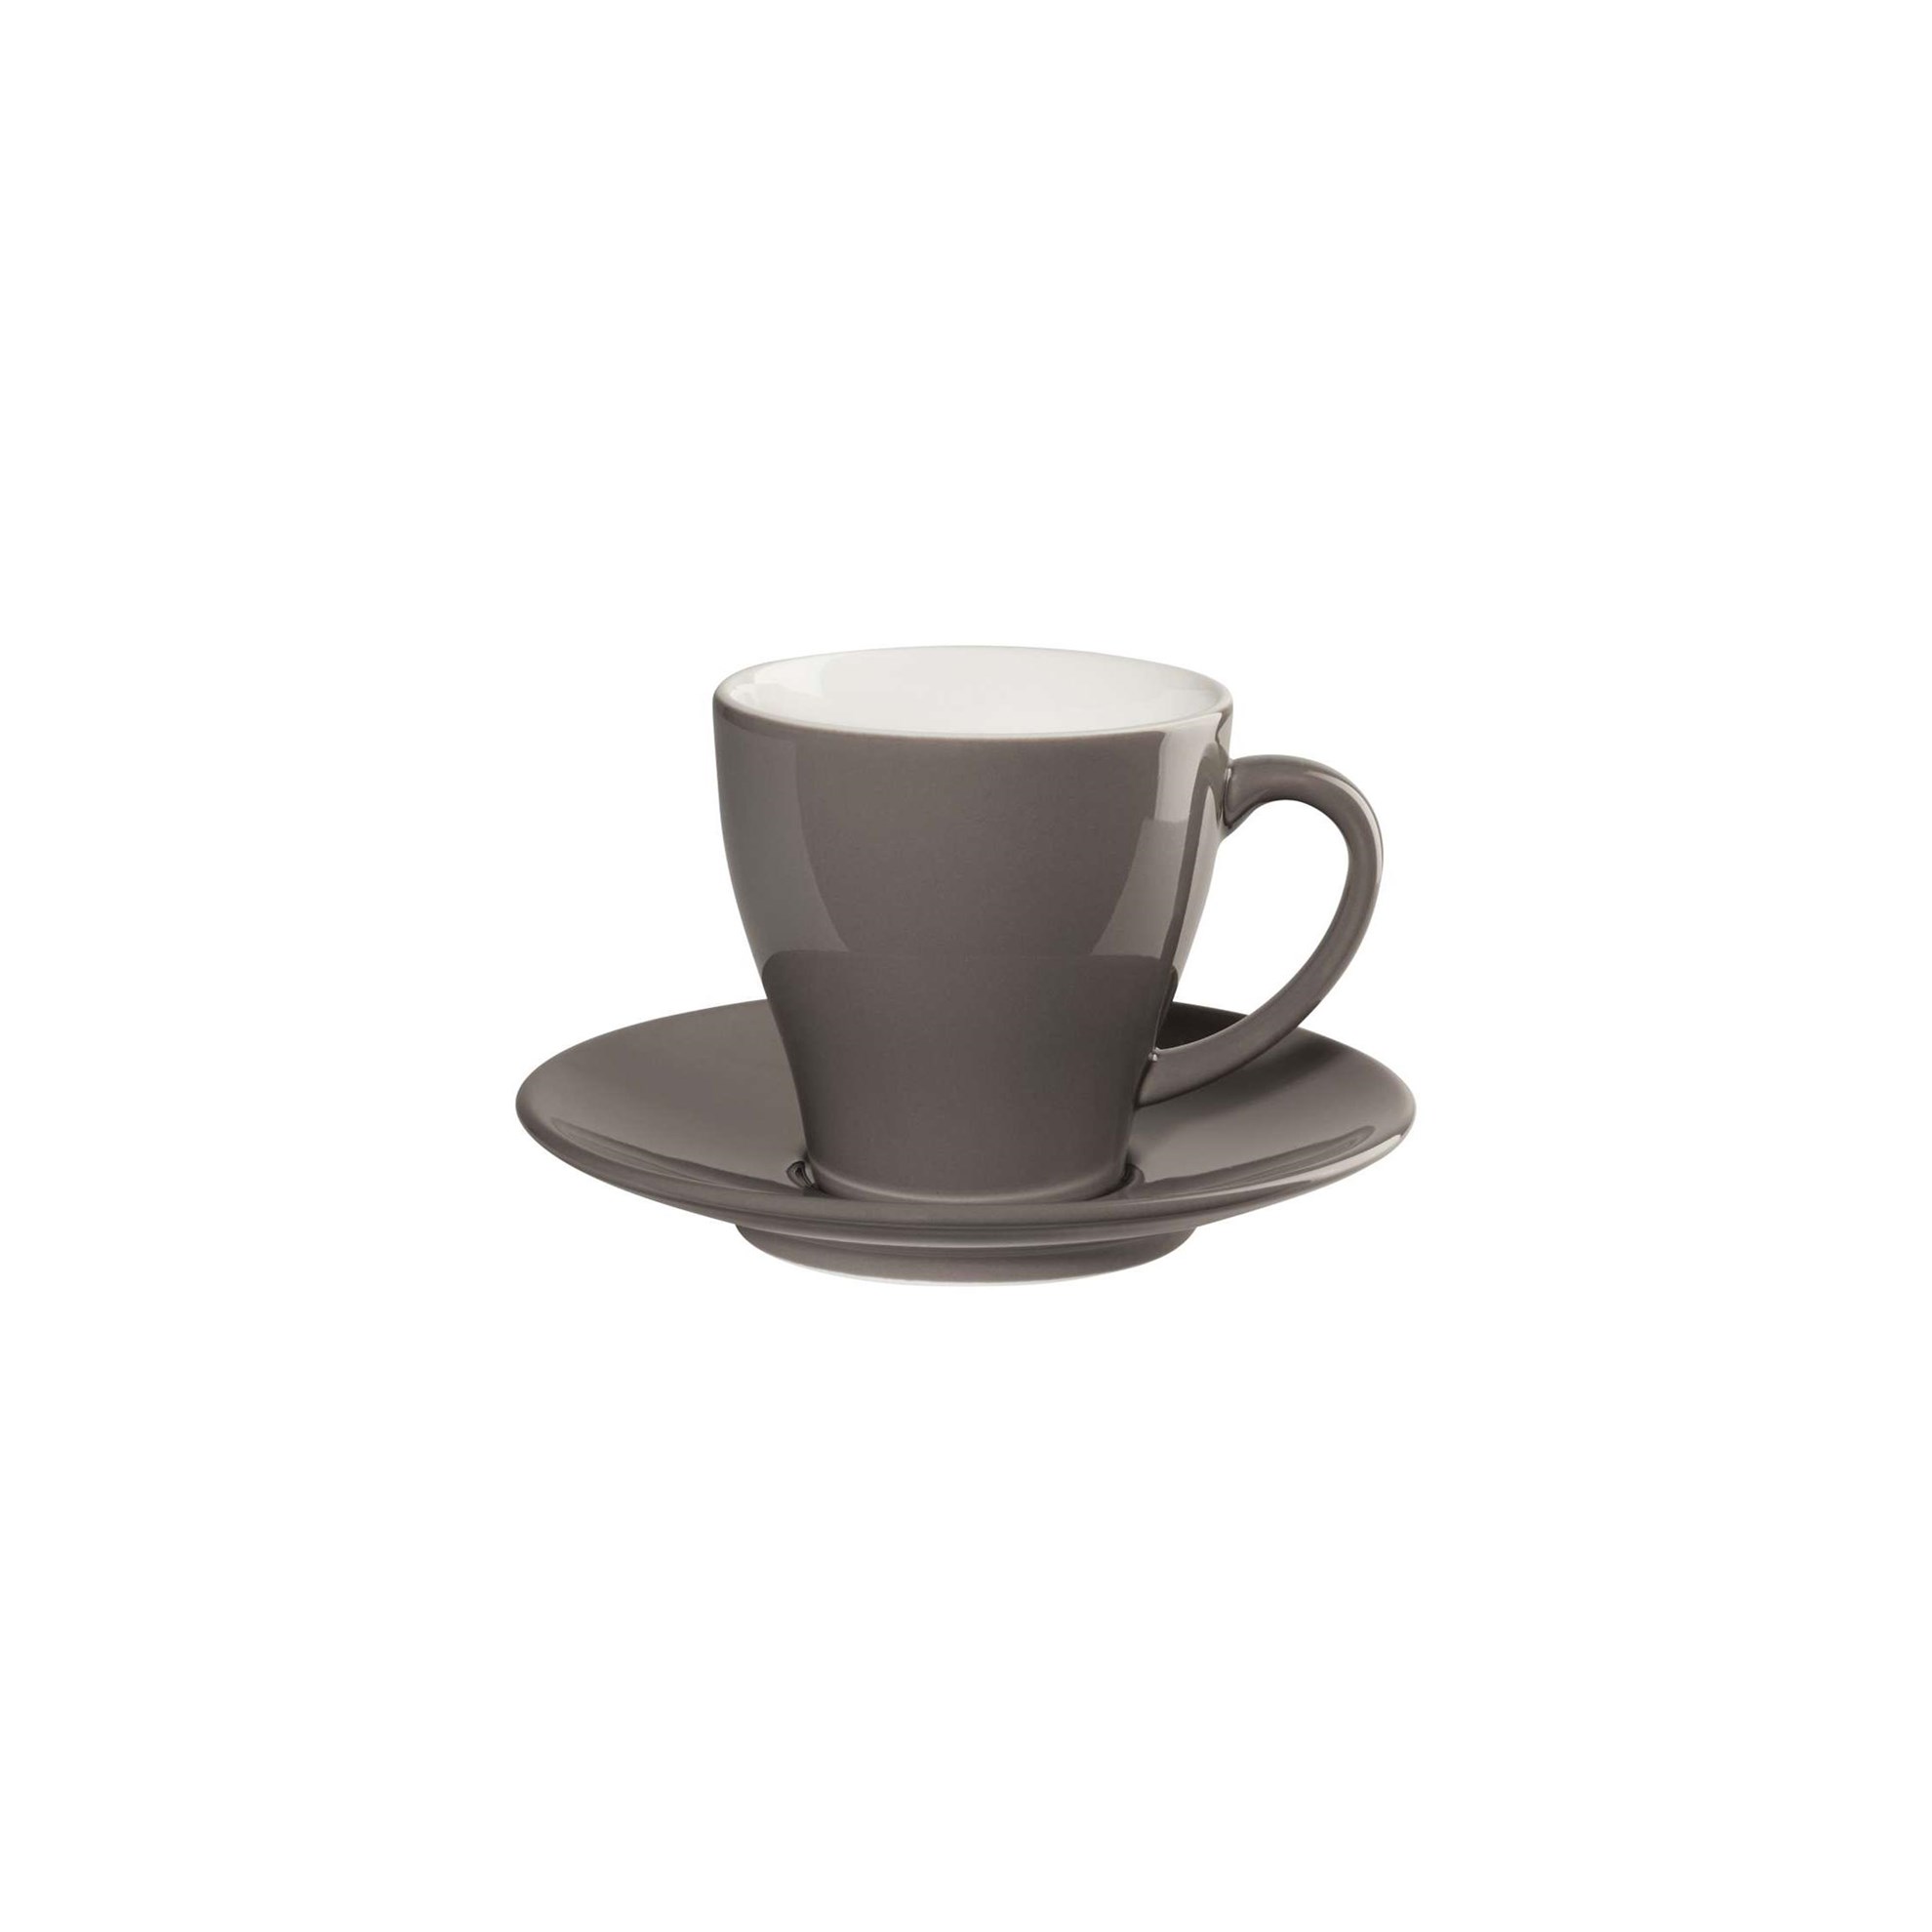 Šálek na kávu s podšálkem CAFFÉ TI AMO 0,25 l, šedohnědý_0